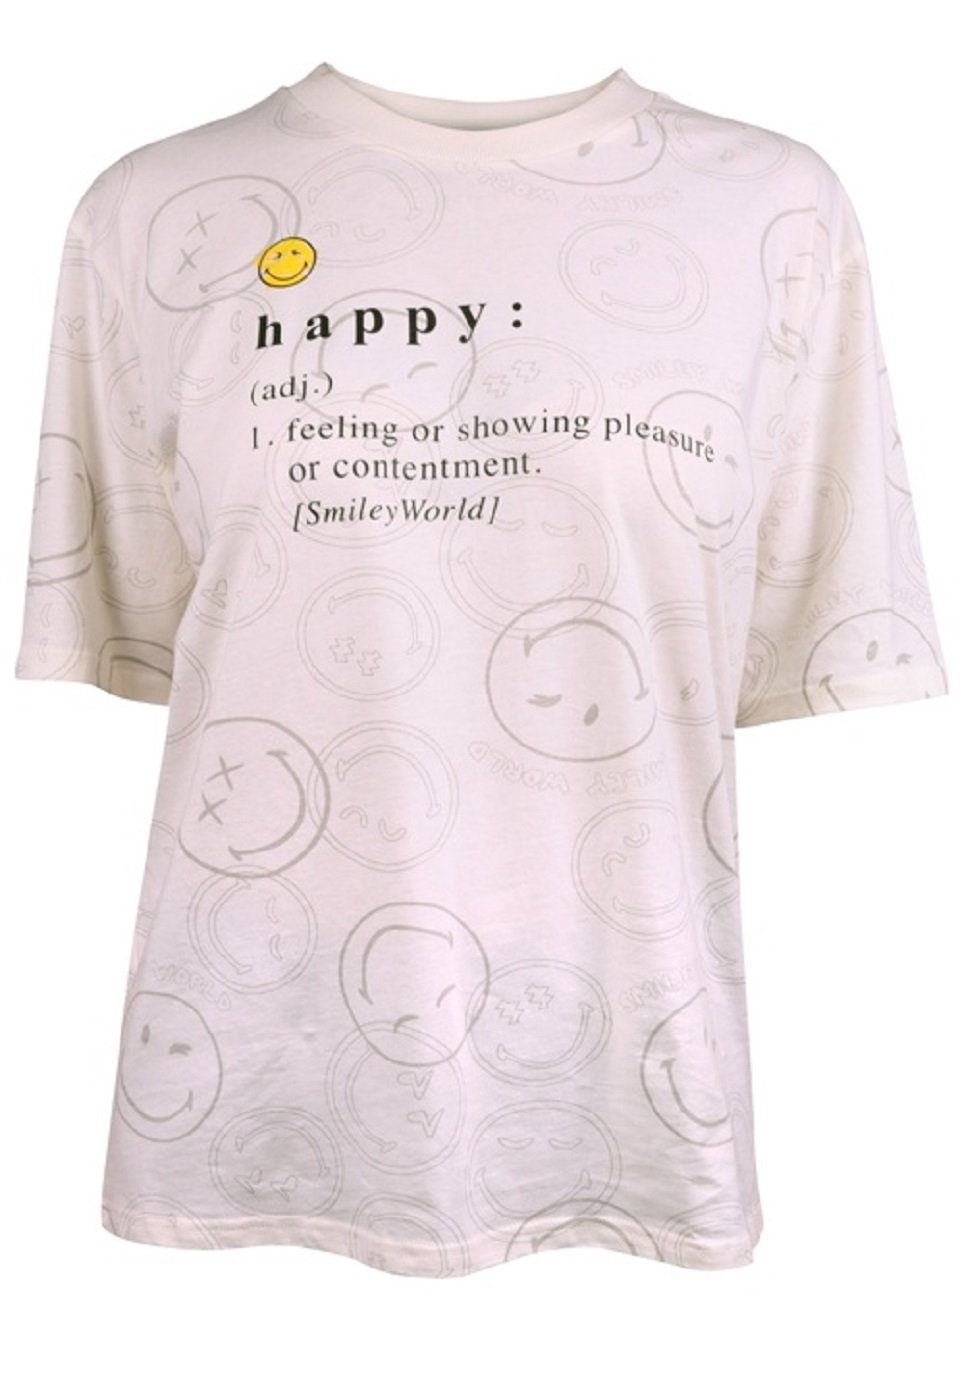 Capelli New York T-Shirt Tshirt mit Smiley Motiv